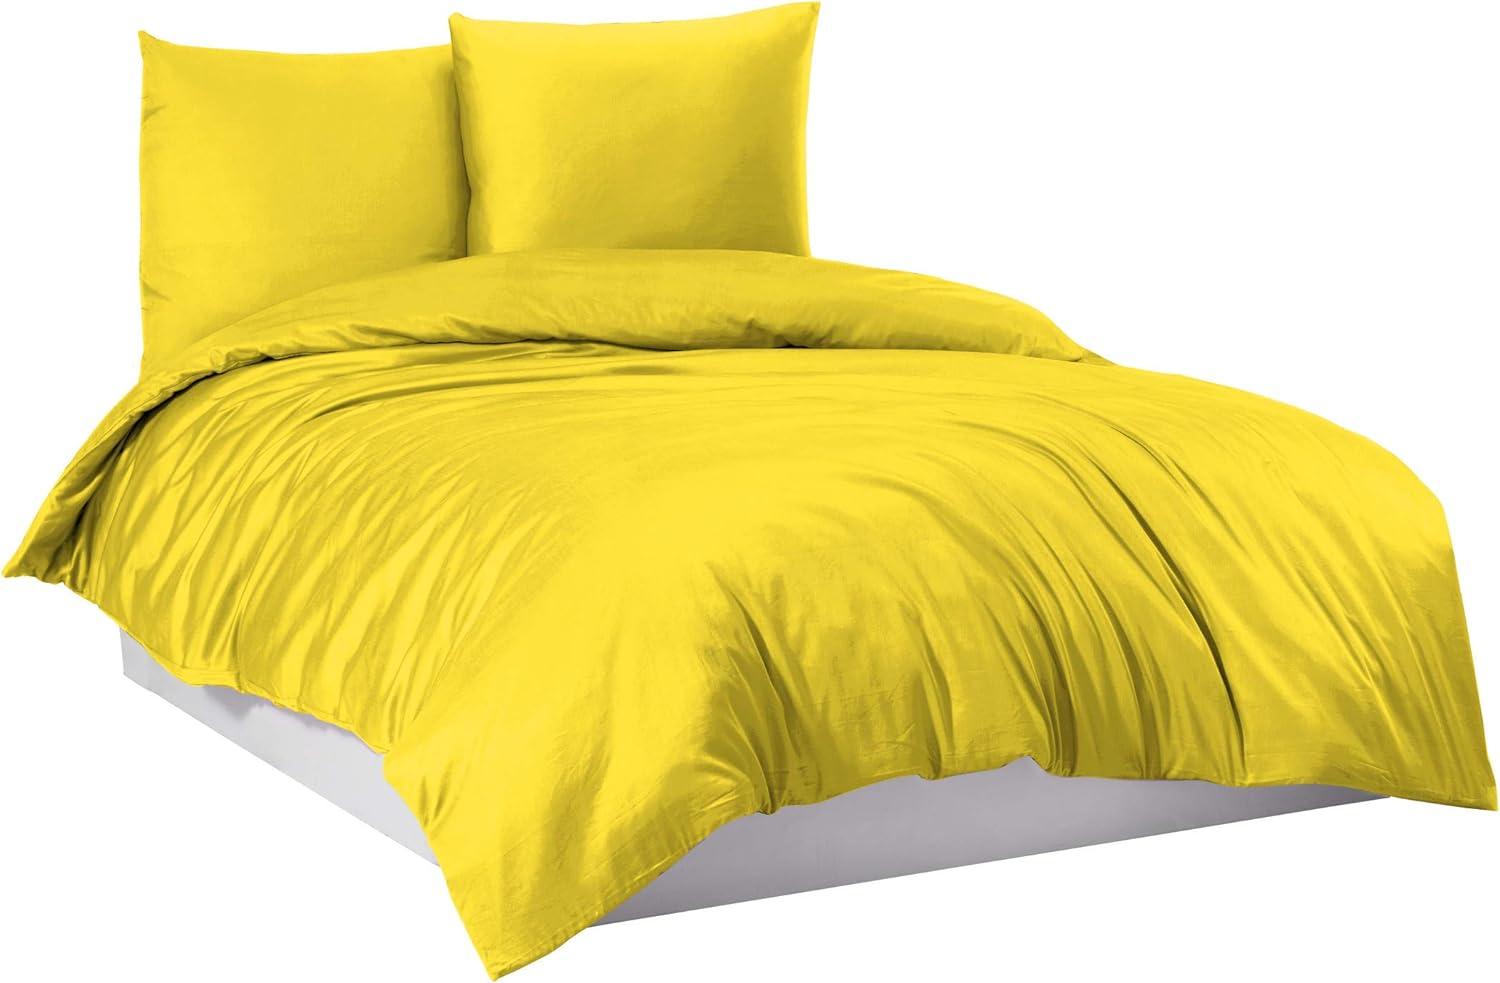 Mixibaby Bettwäsche Bettgarnitur Bettbezug 100% Baumwolle 135x200 155x220 200x220 200x200, Farbe:Gelb, Größe:200 x 220 cm Bild 1